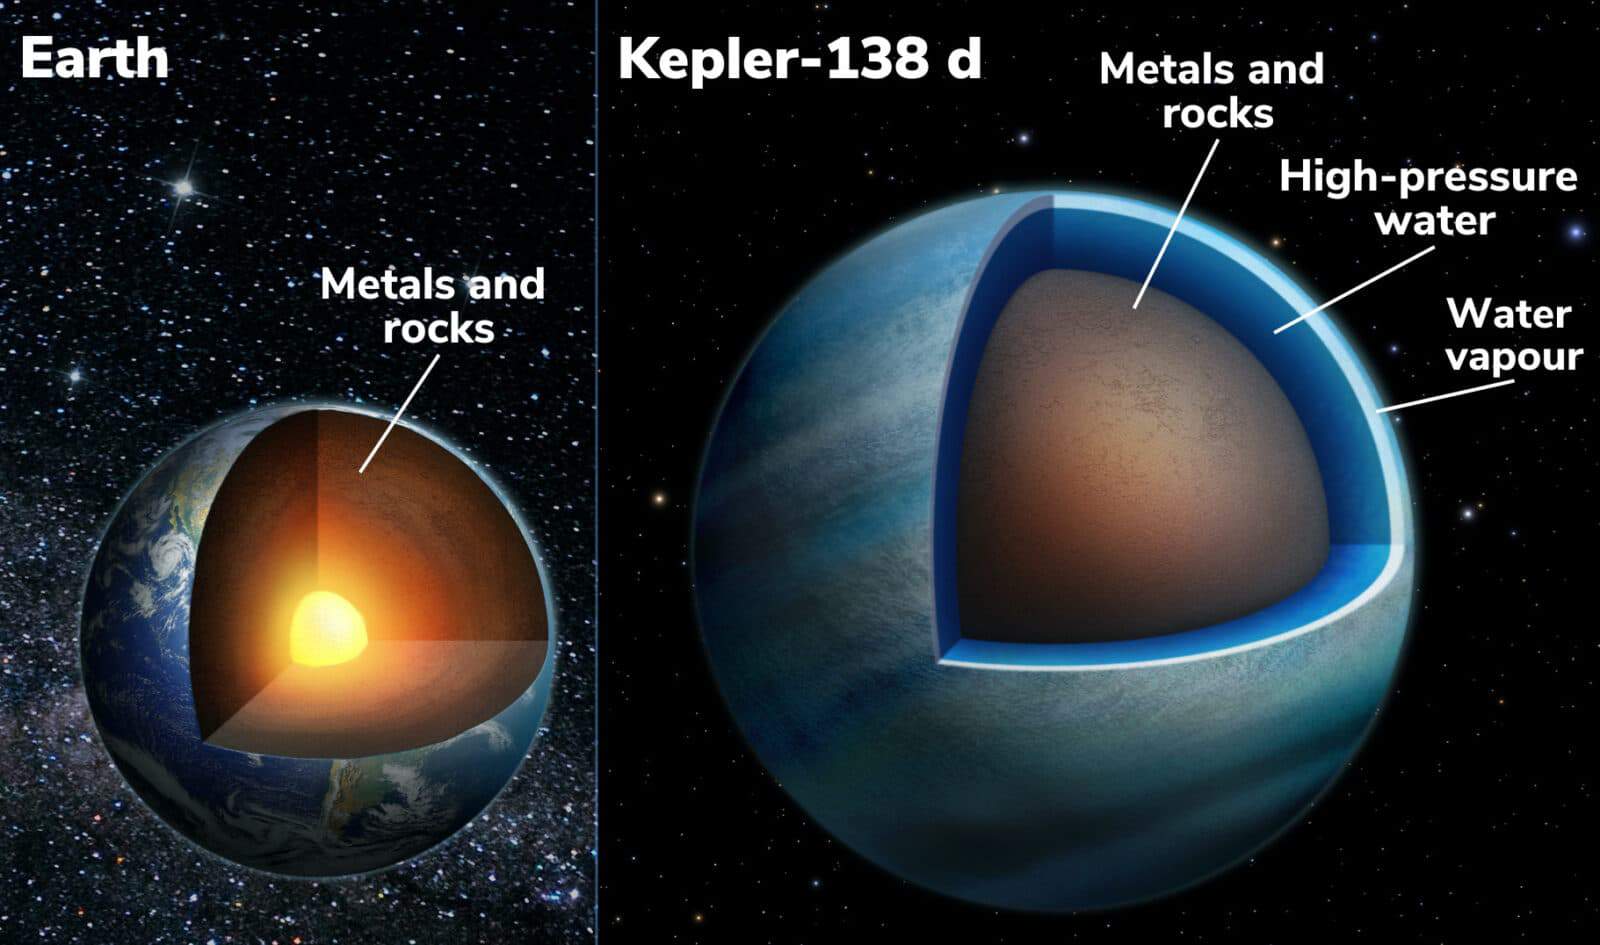 IMG02 UdeM Earth Kepler138d crop ENLabels 2